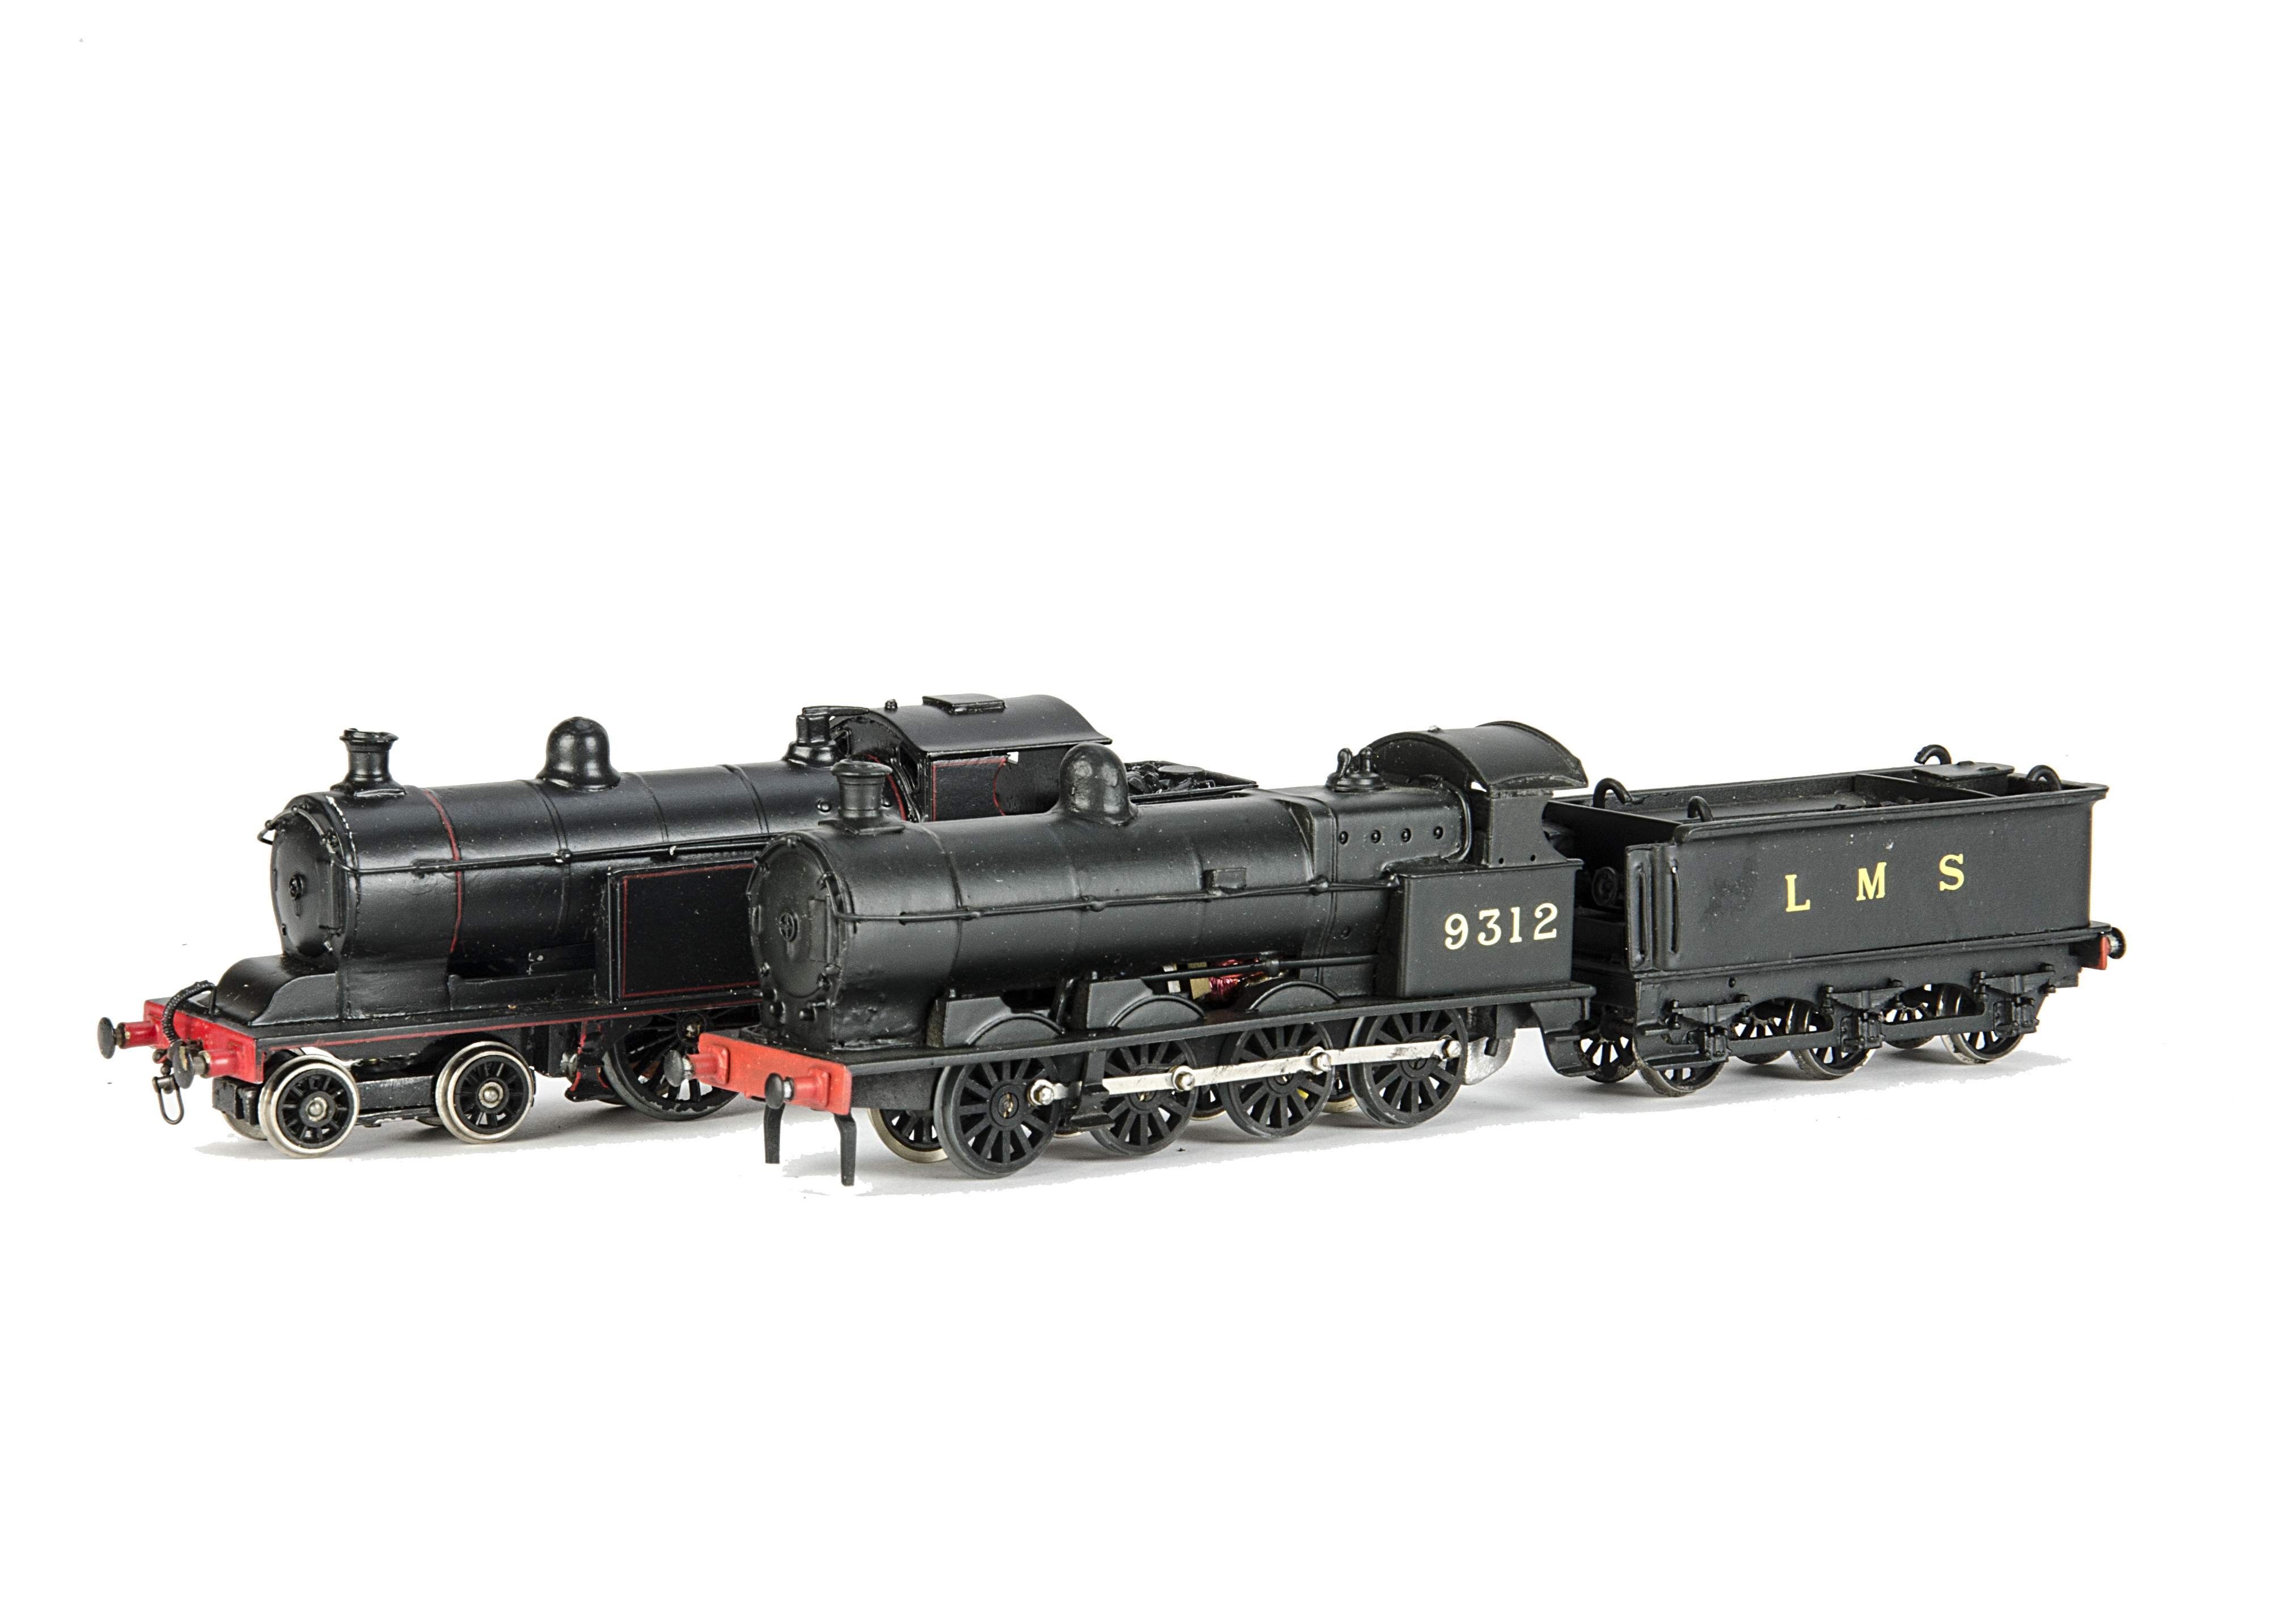 Kitbuilt Finescale OO Gauge Ex-LNWR Locomotives, comprising Bowen-Cooke 'Super D' class 0-8-0 as LMS